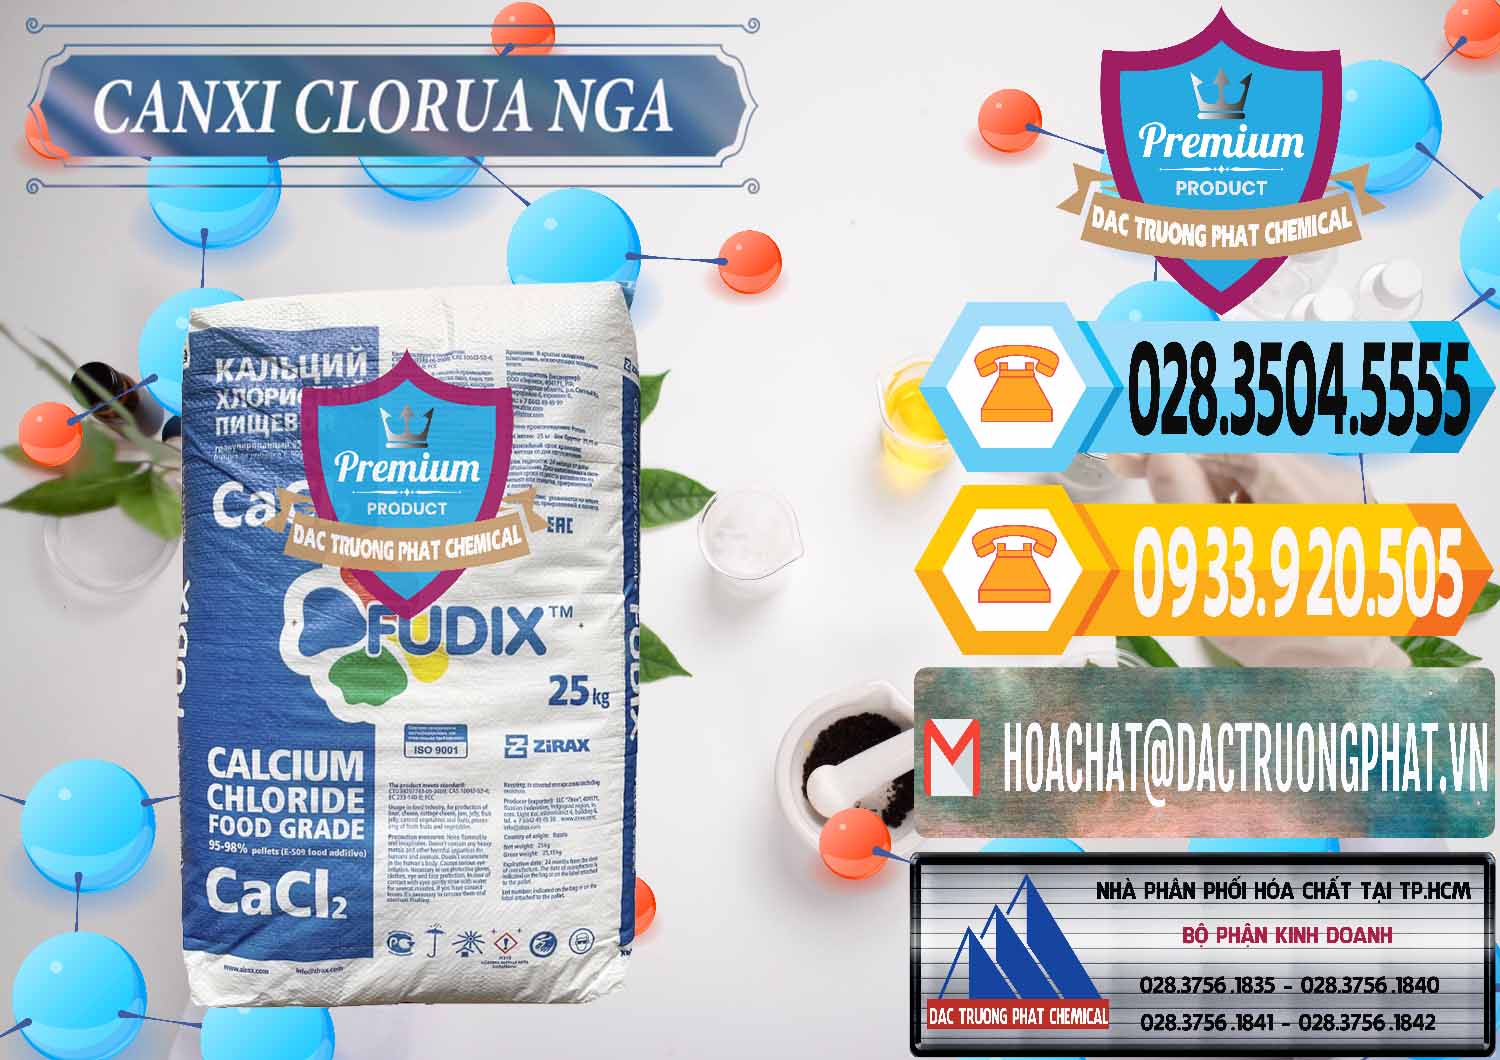 Cty bán _ cung cấp CaCl2 – Canxi Clorua Nga Russia - 0430 - Chuyên cung cấp & phân phối hóa chất tại TP.HCM - hoachattayrua.net